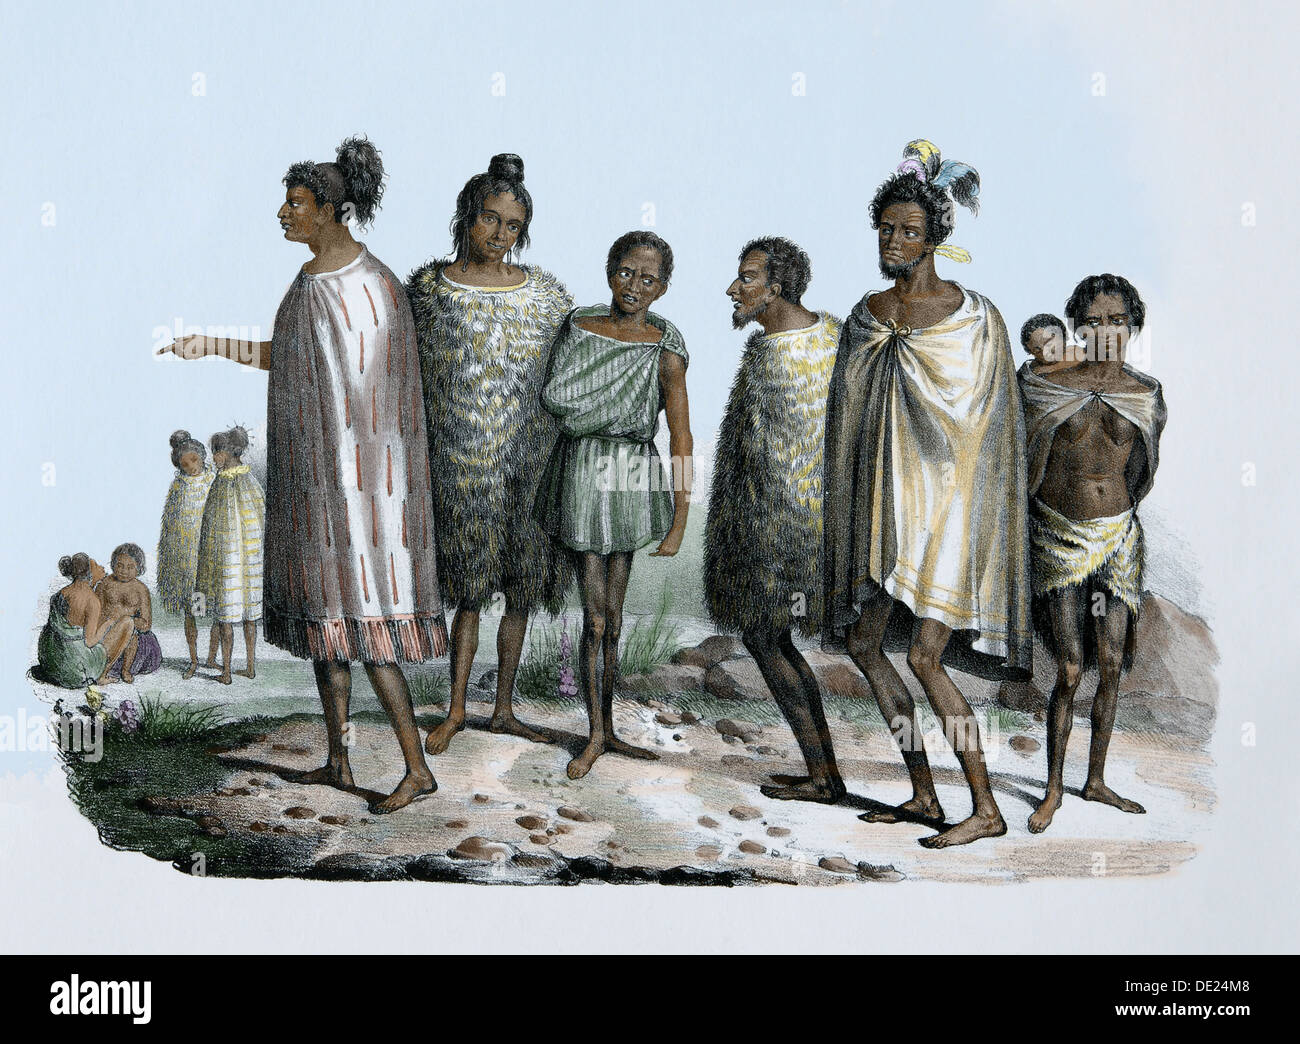 Pazifik-Inseln. Neuseeländer, um 1840. Polynesischen Ureinwohner. Maori-Kultur. Farbige Gravur. des 19. Jahrhunderts. Stockfoto